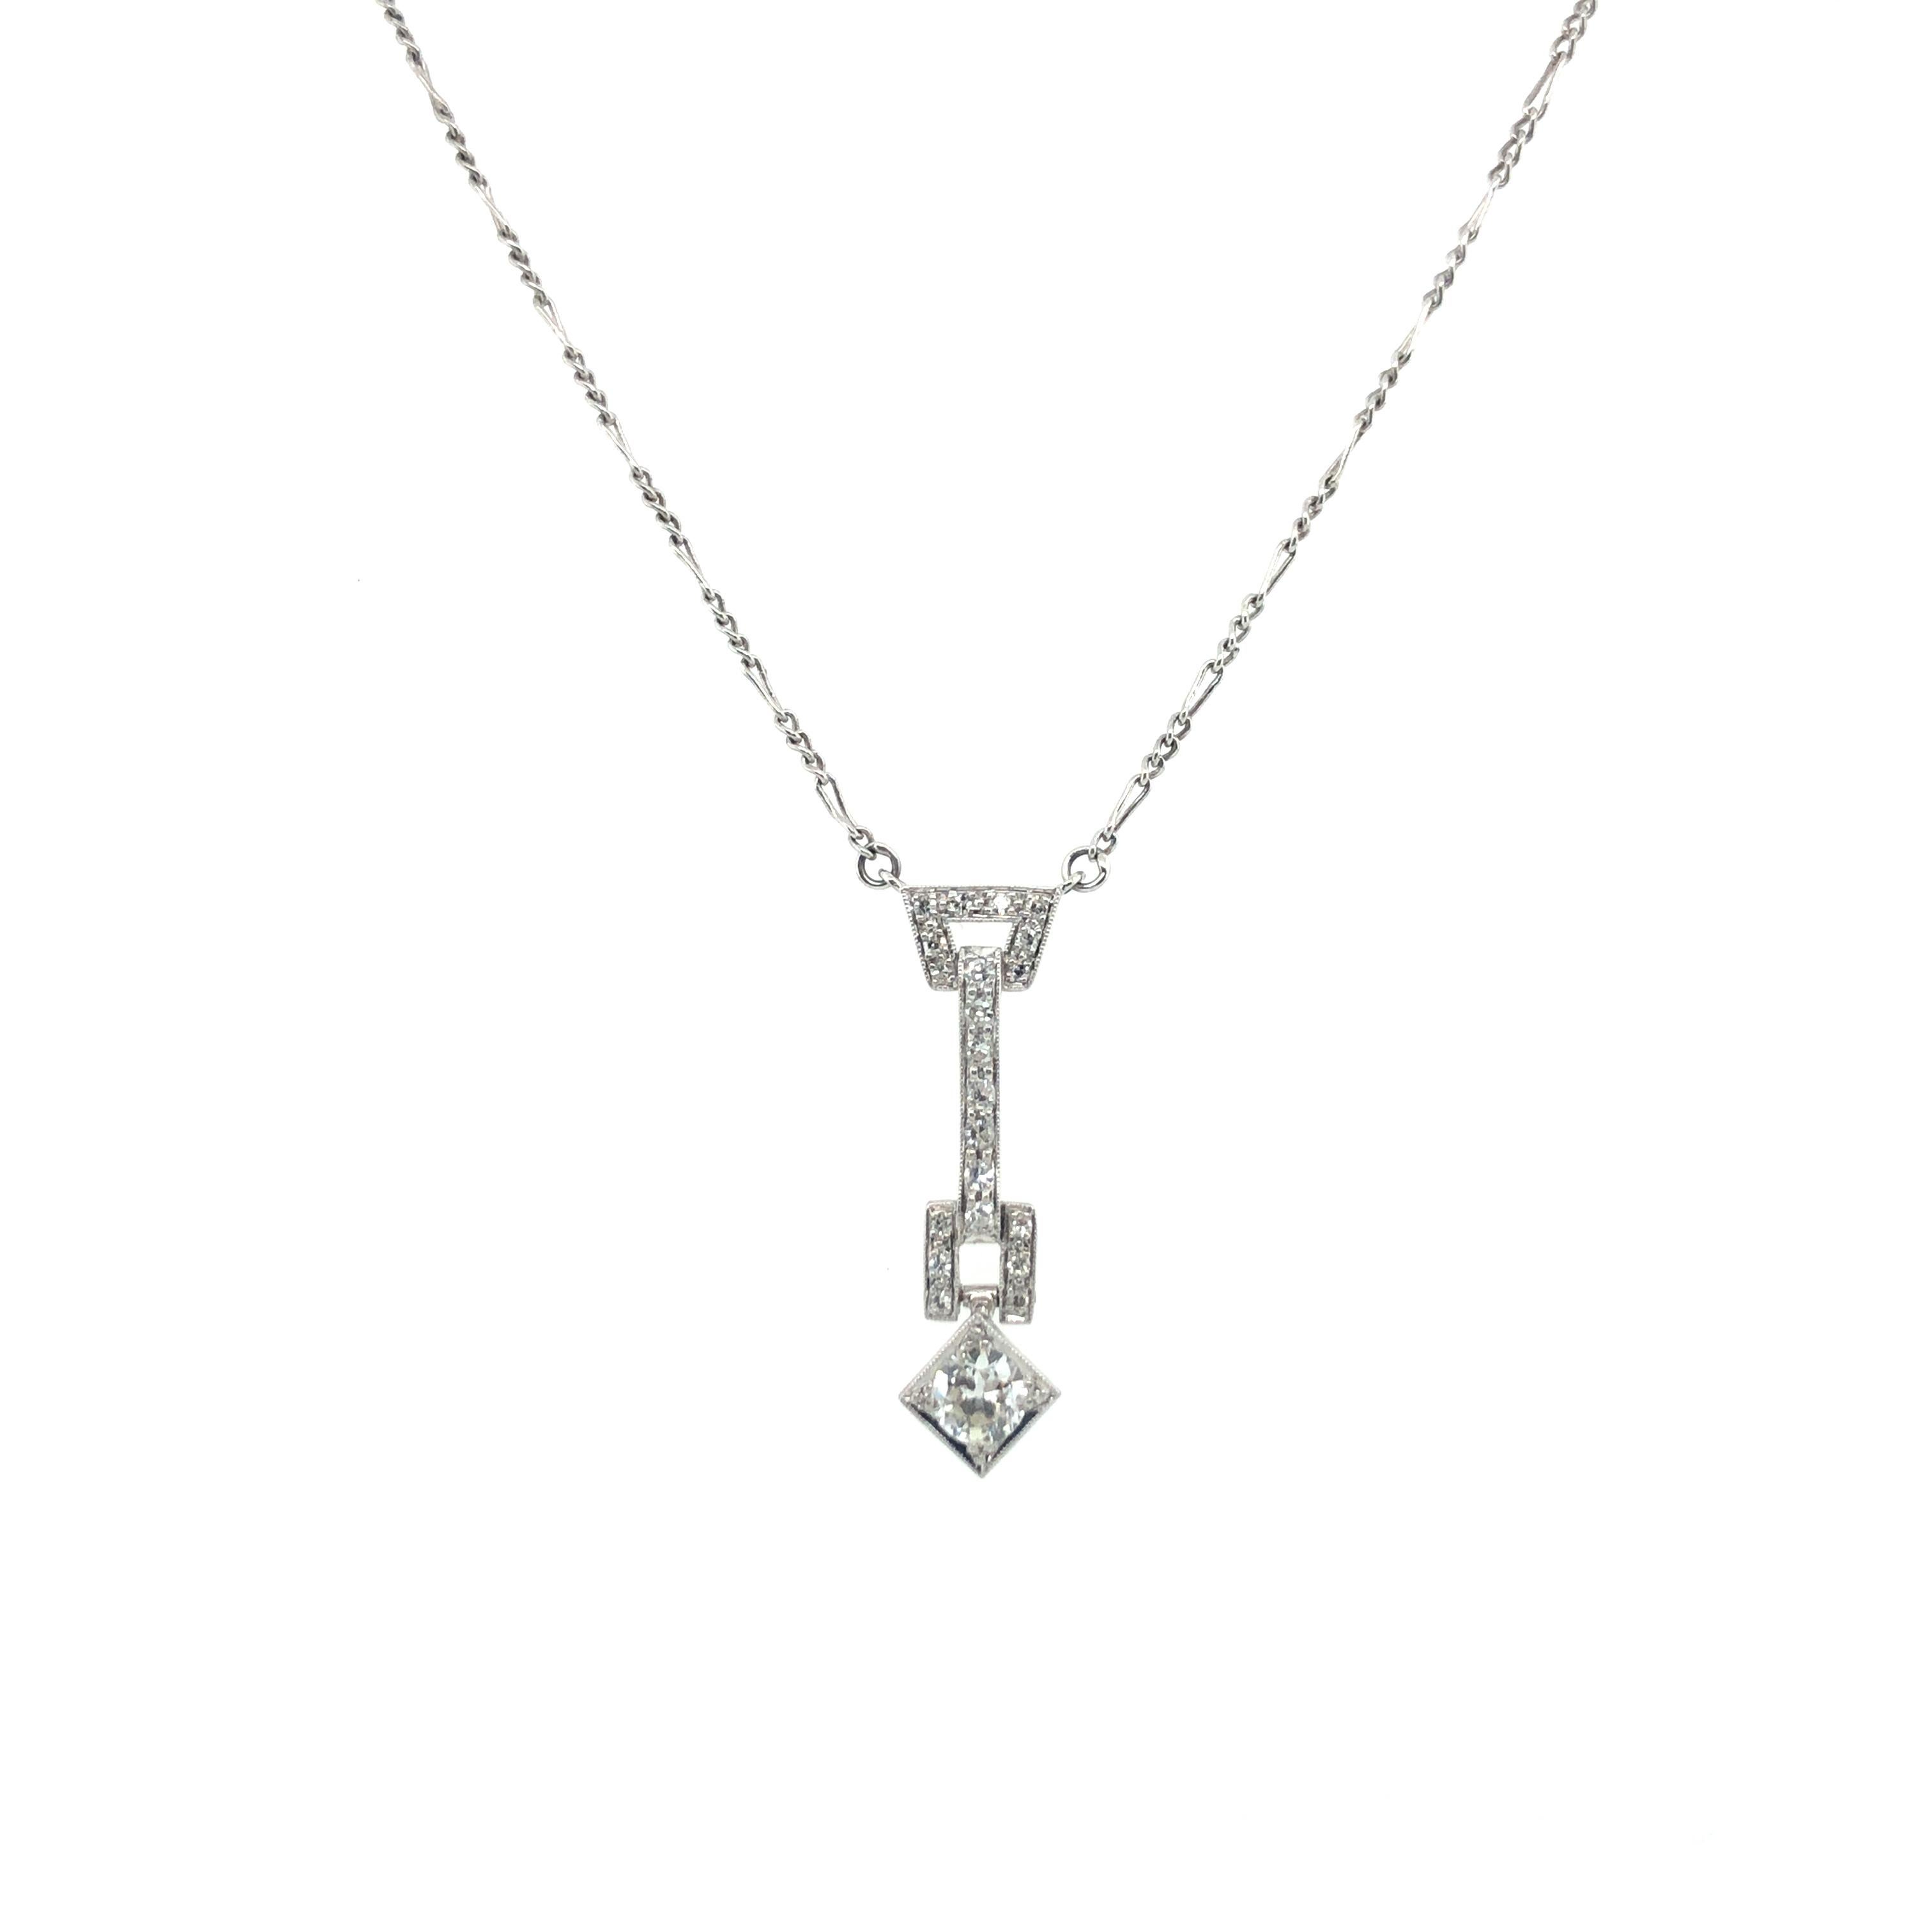 Old European Cut Art Deco Diamond Pendant Necklace in Platinum 950